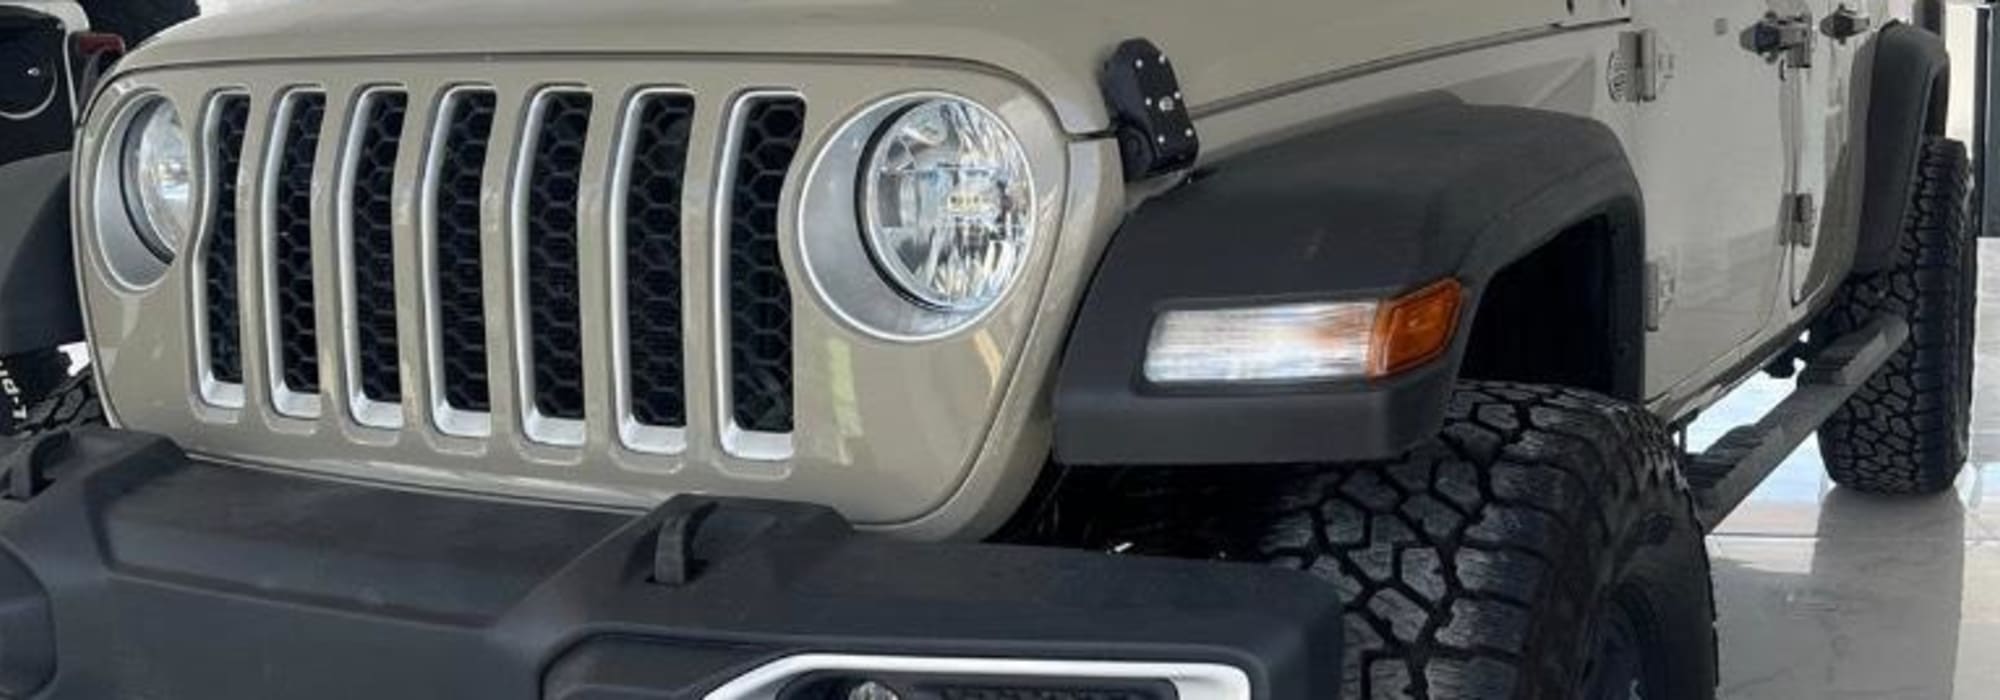 Jeep Wrangler 2020 14000 km Gasoline Automatic in Costa del Este | Jeep  gladiator sport 2020